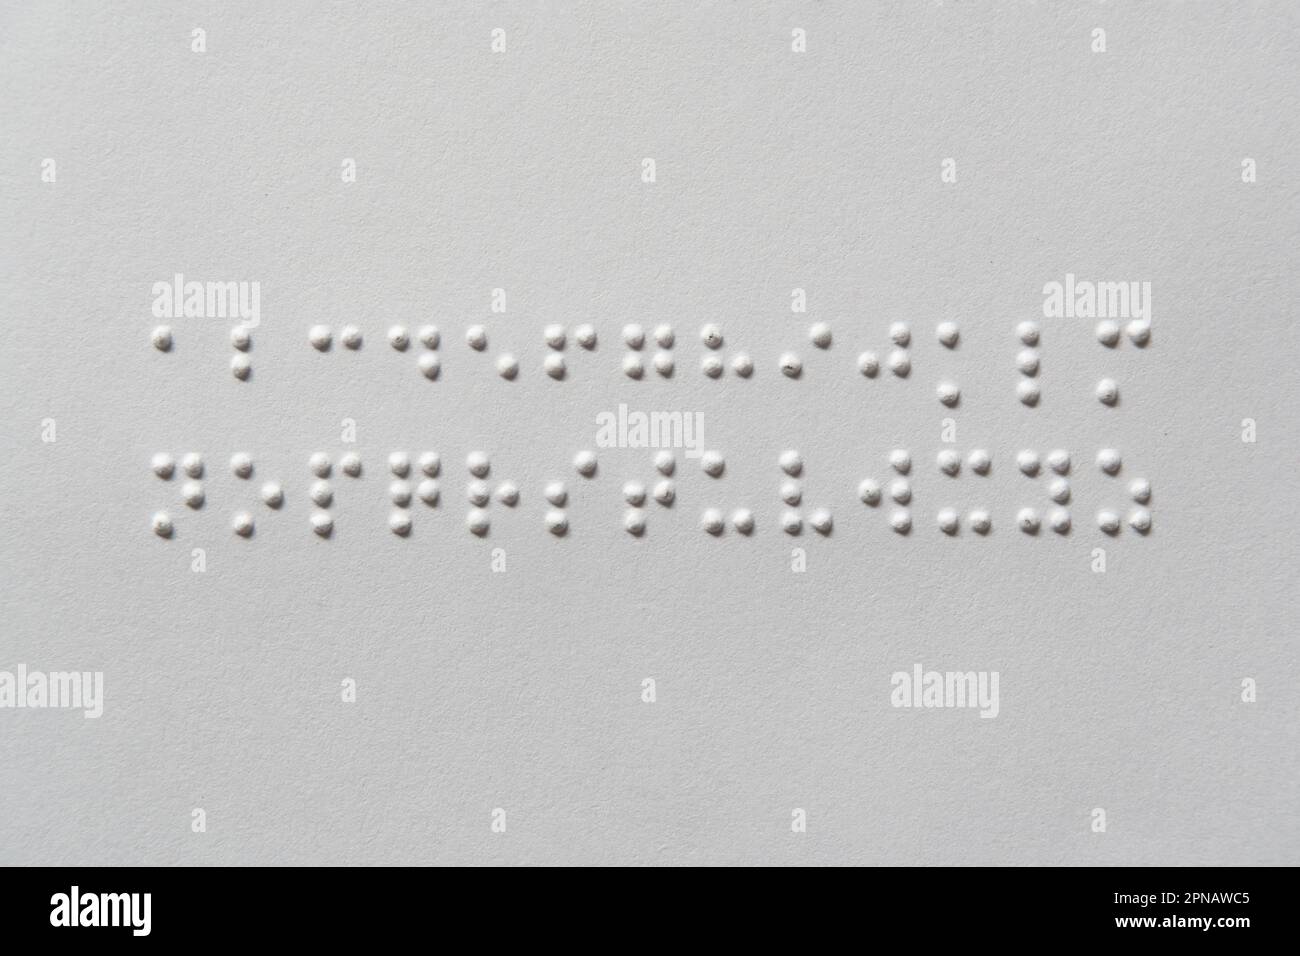 Gli alfabeti Braille dalla A alla Z in ordine alfabetico Foto Stock